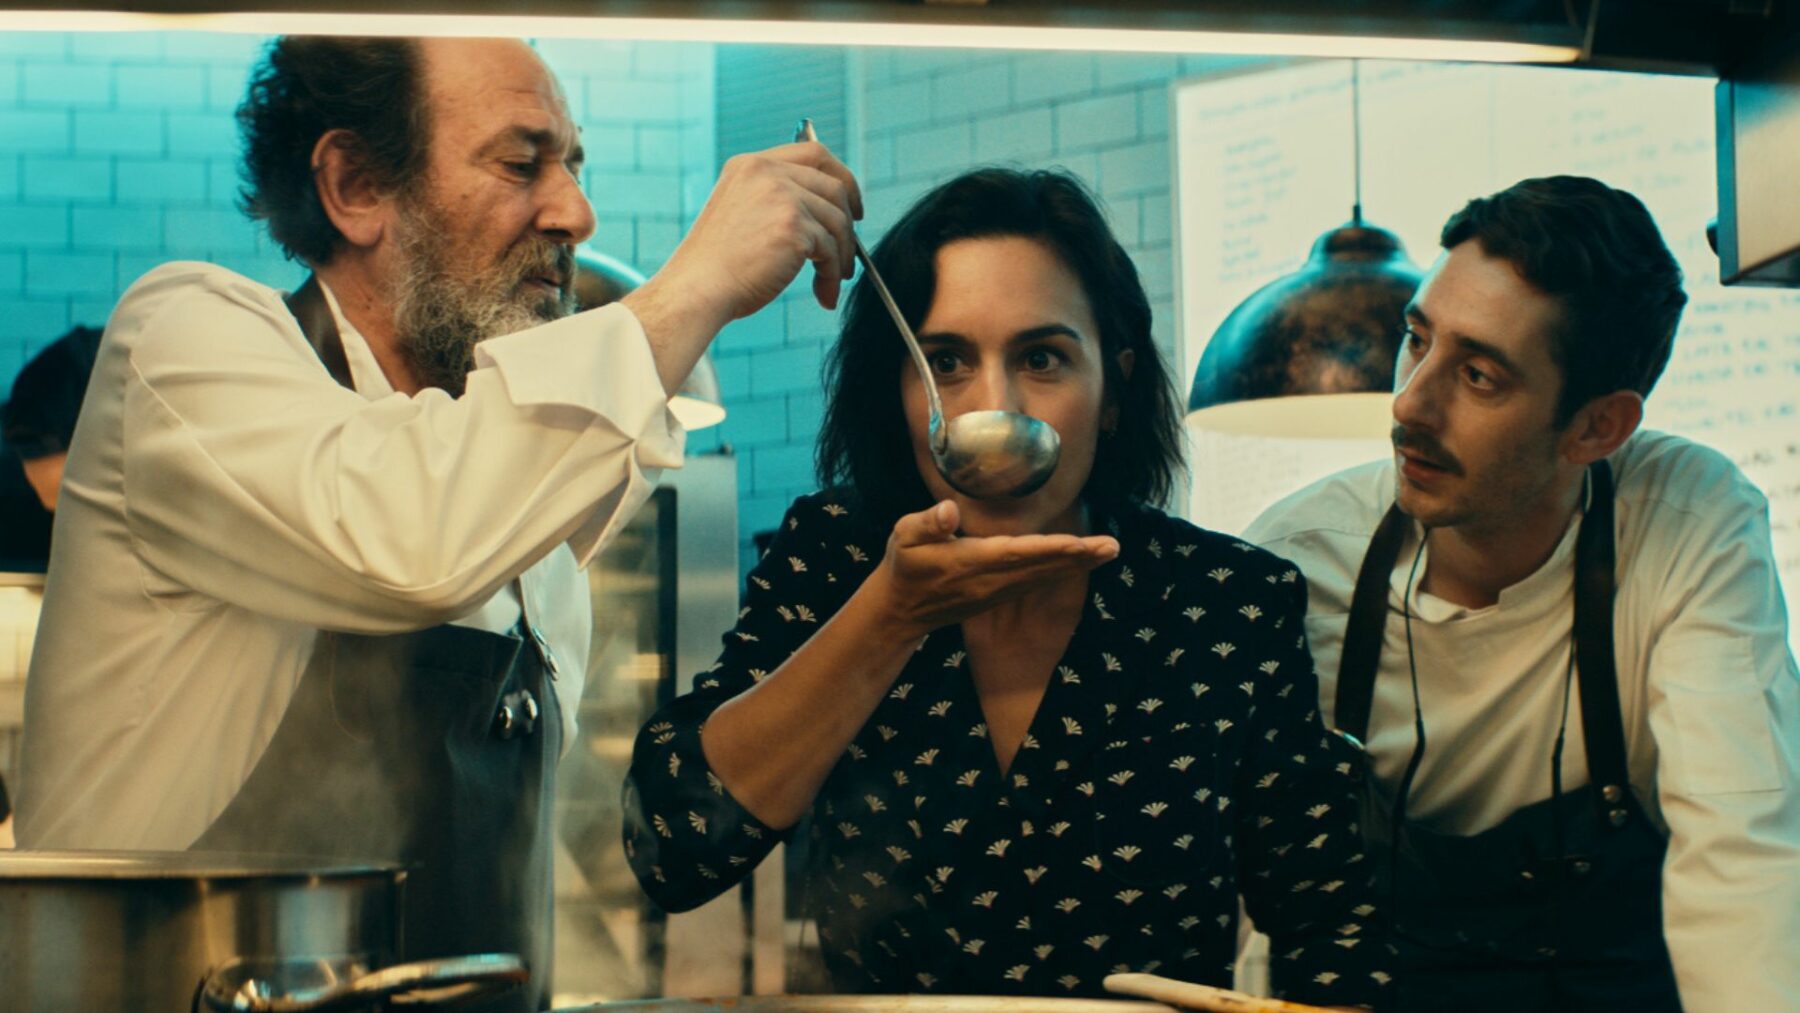 Kadr przedstawia dwóch kucharzy i kobietę pośrodku próbująca potrawę.